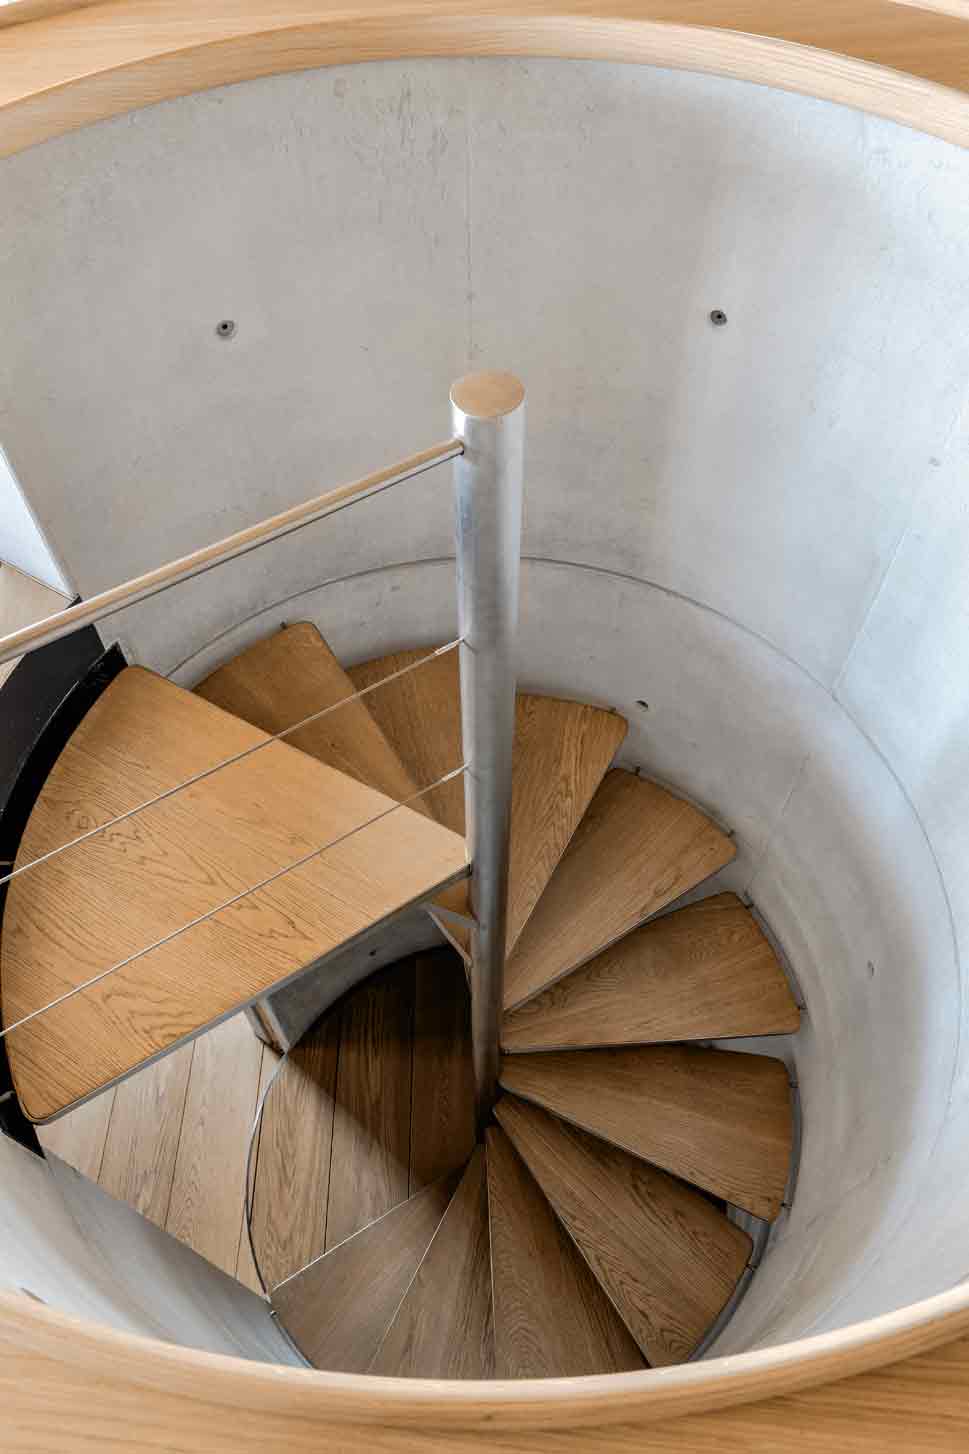 Фантони спроектировал винтовую лестницу не только для экономии пространства. Такая форма напоминает ему и хозяину...